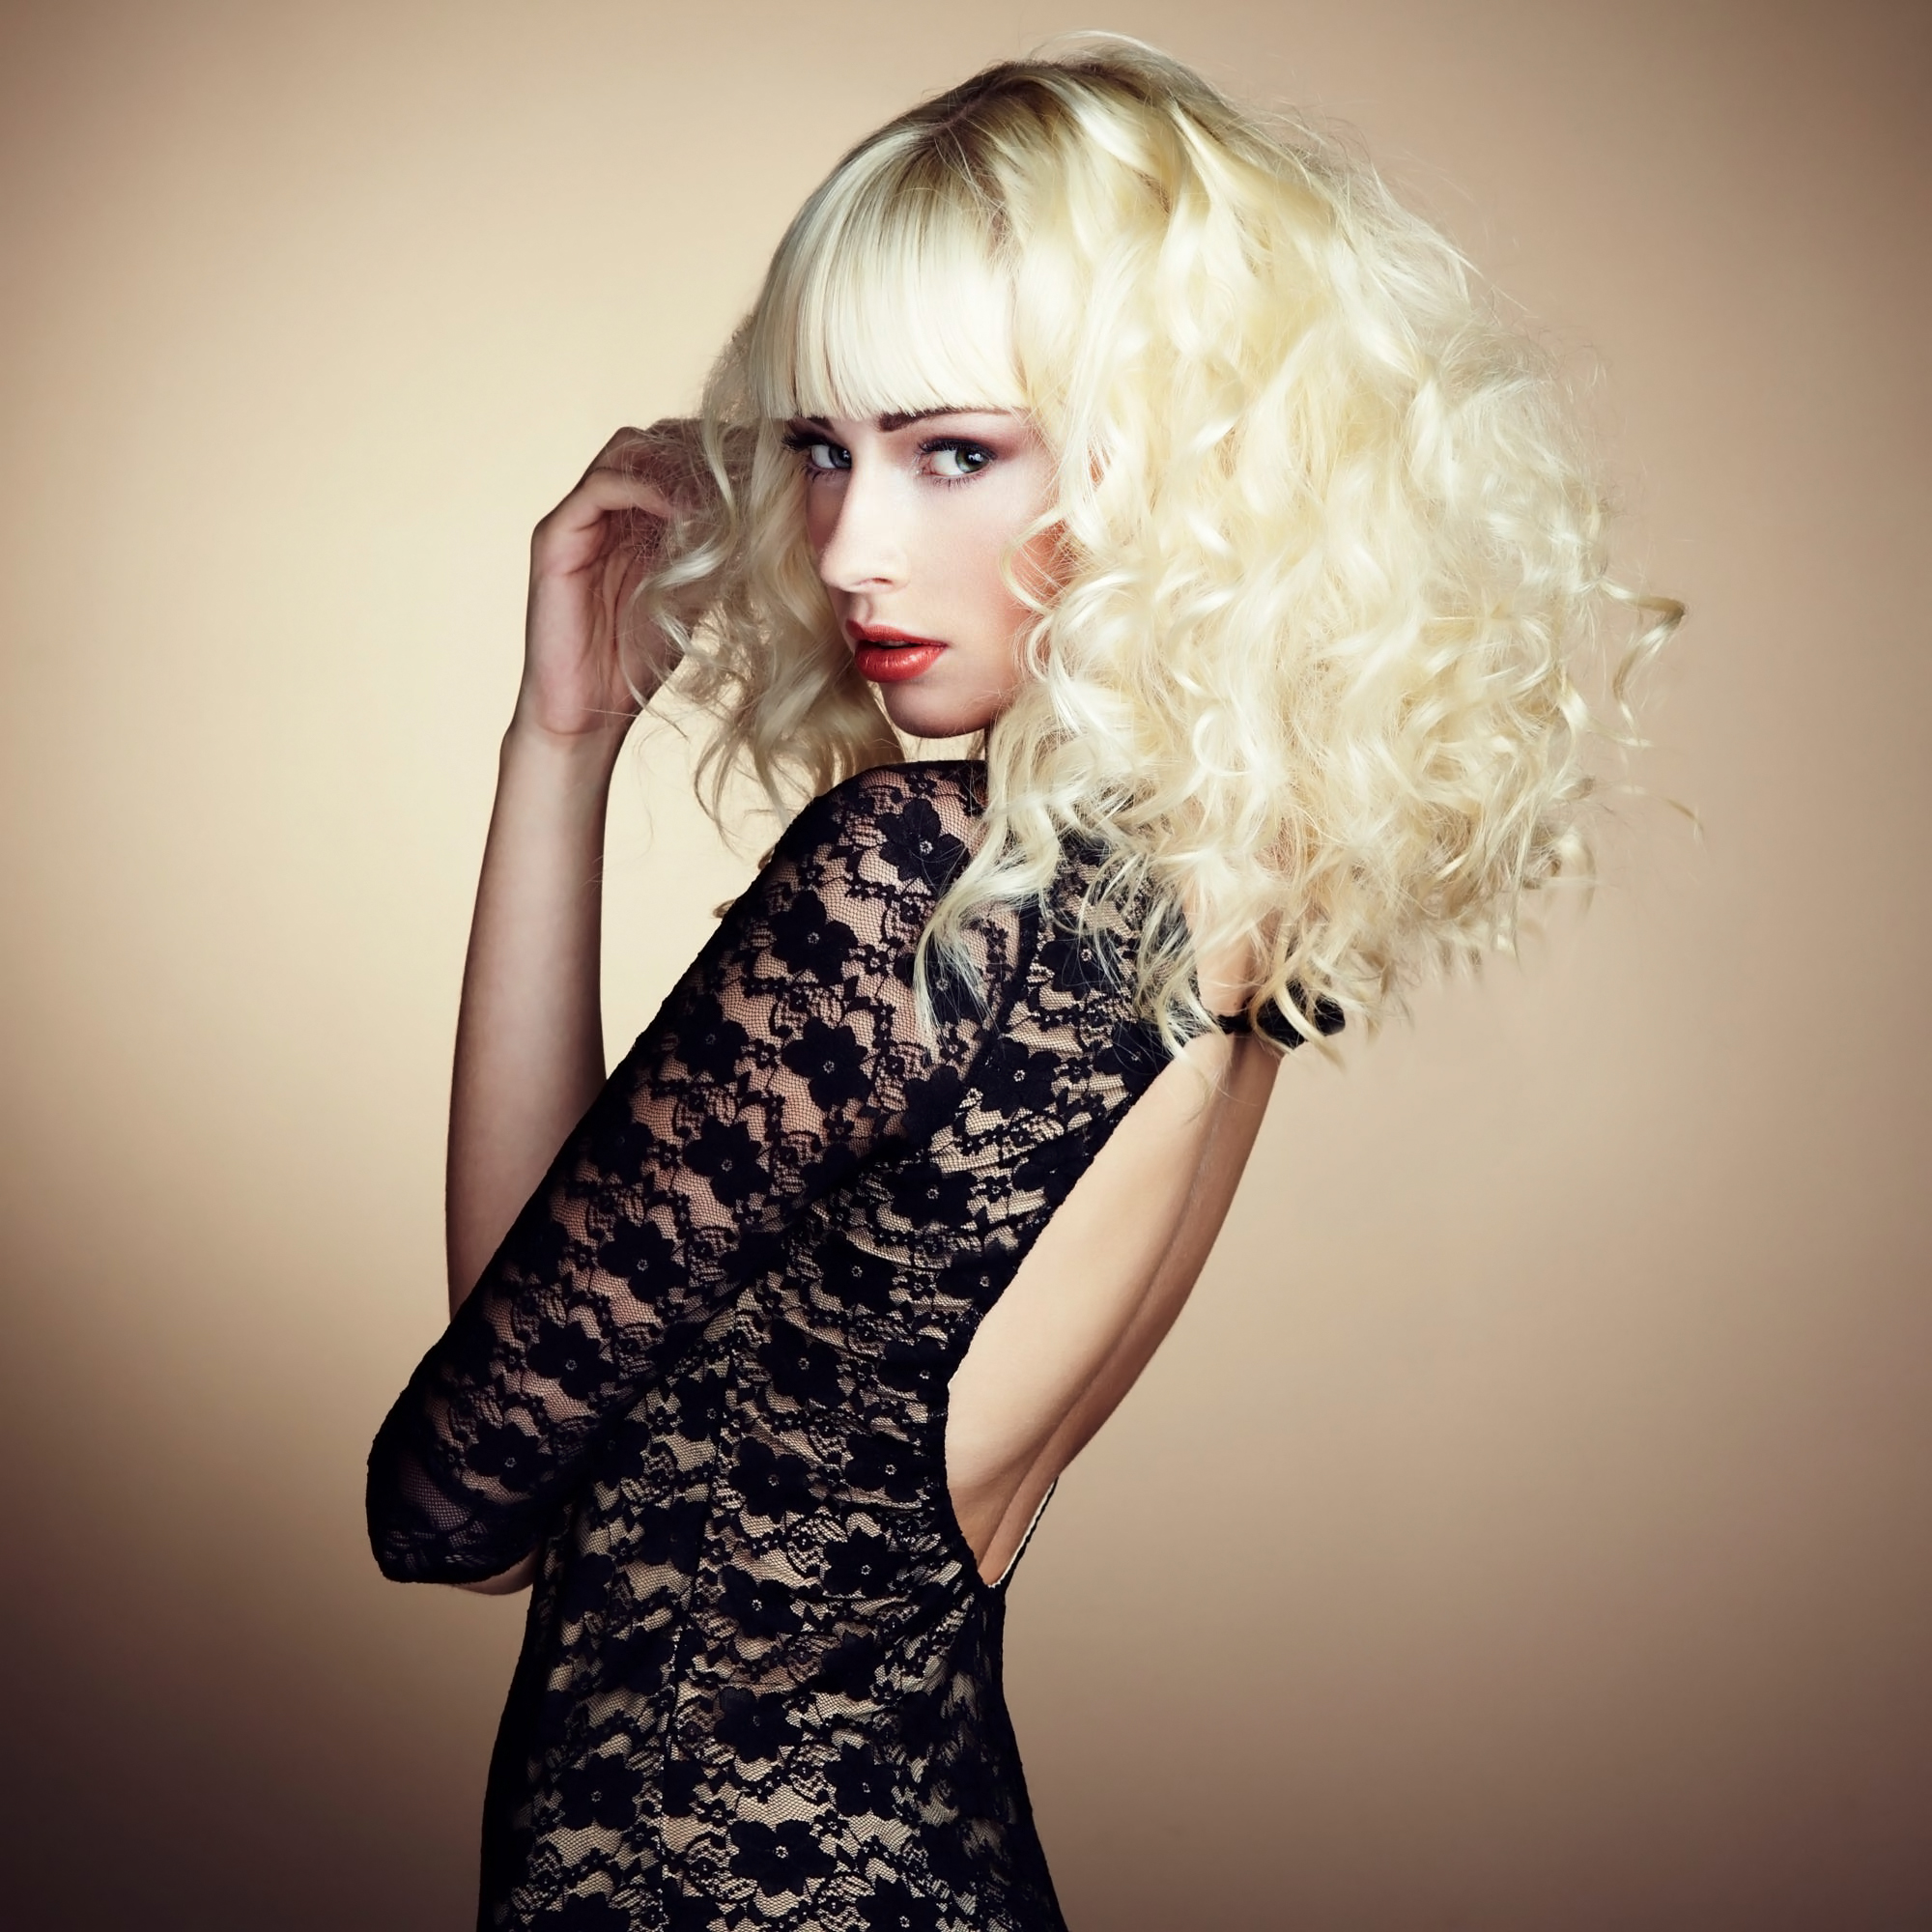 Oleg Gekman Women Blonde Shoulder Length Hair Curly Hair Bangs Makeup Looking At Viewer Simple Backg 2000x2000